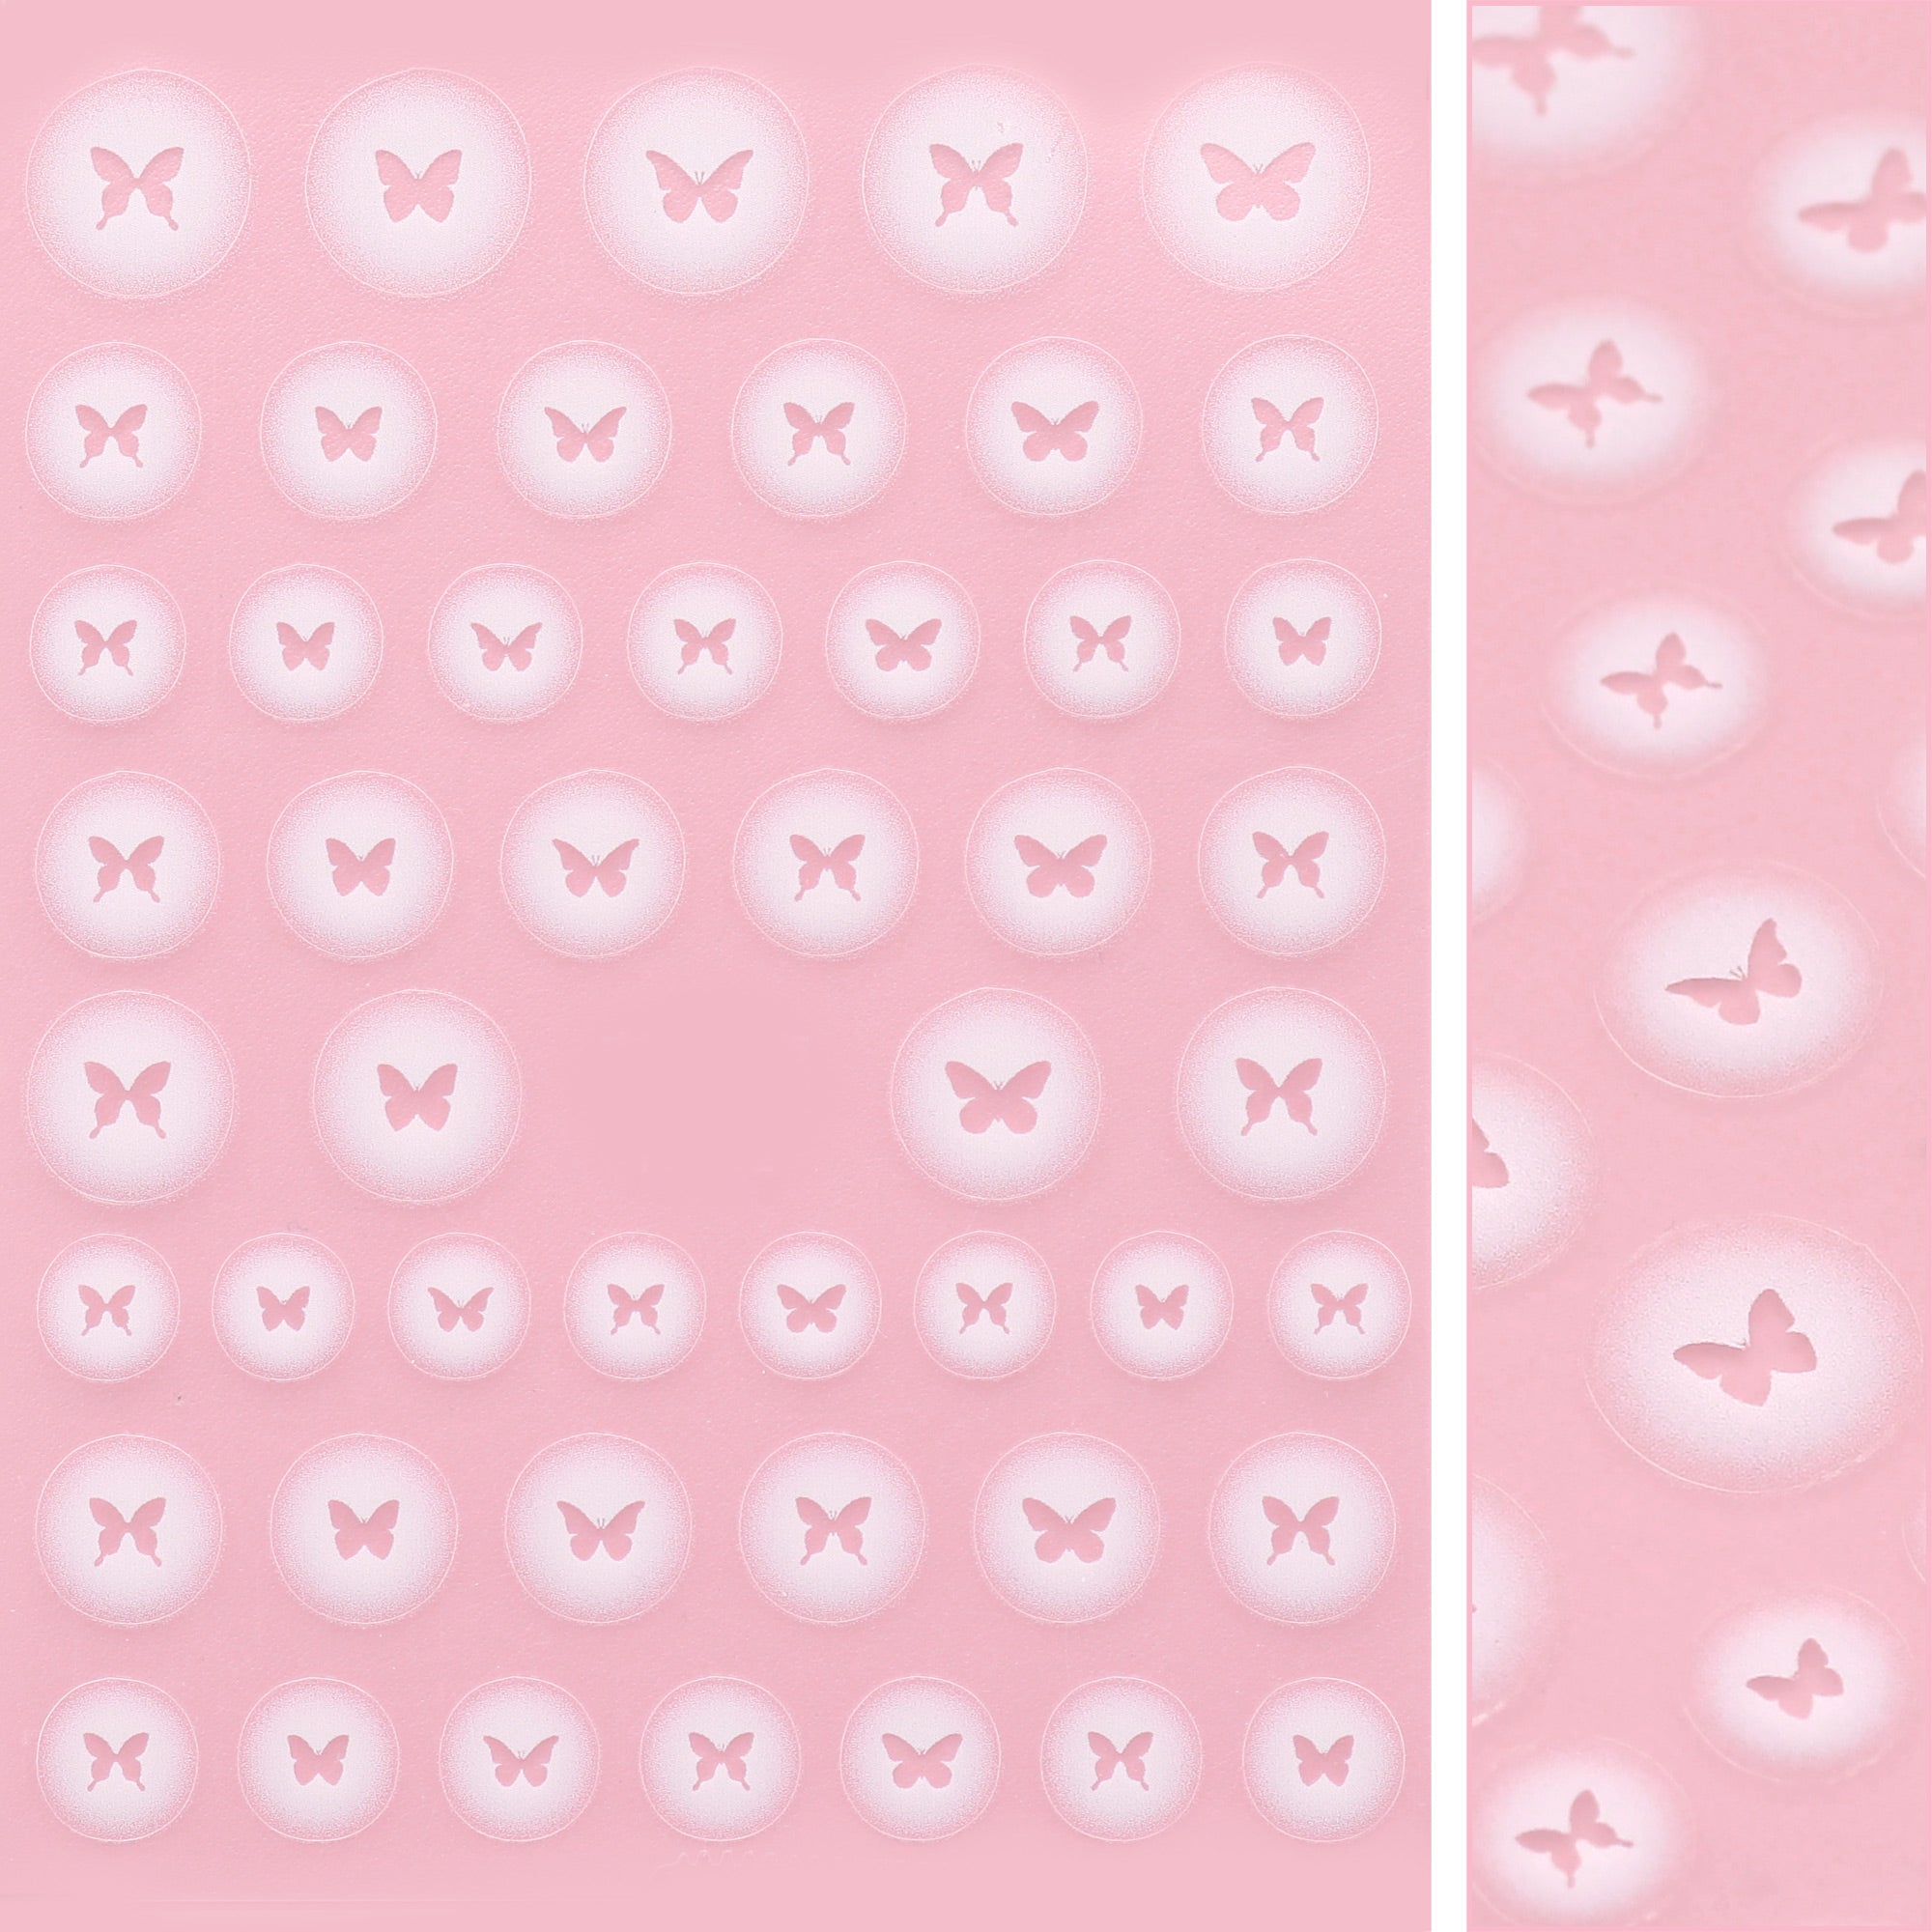 Kawaii Nail Art Sticker / Airbrush Butterflies White Butterfly Decal